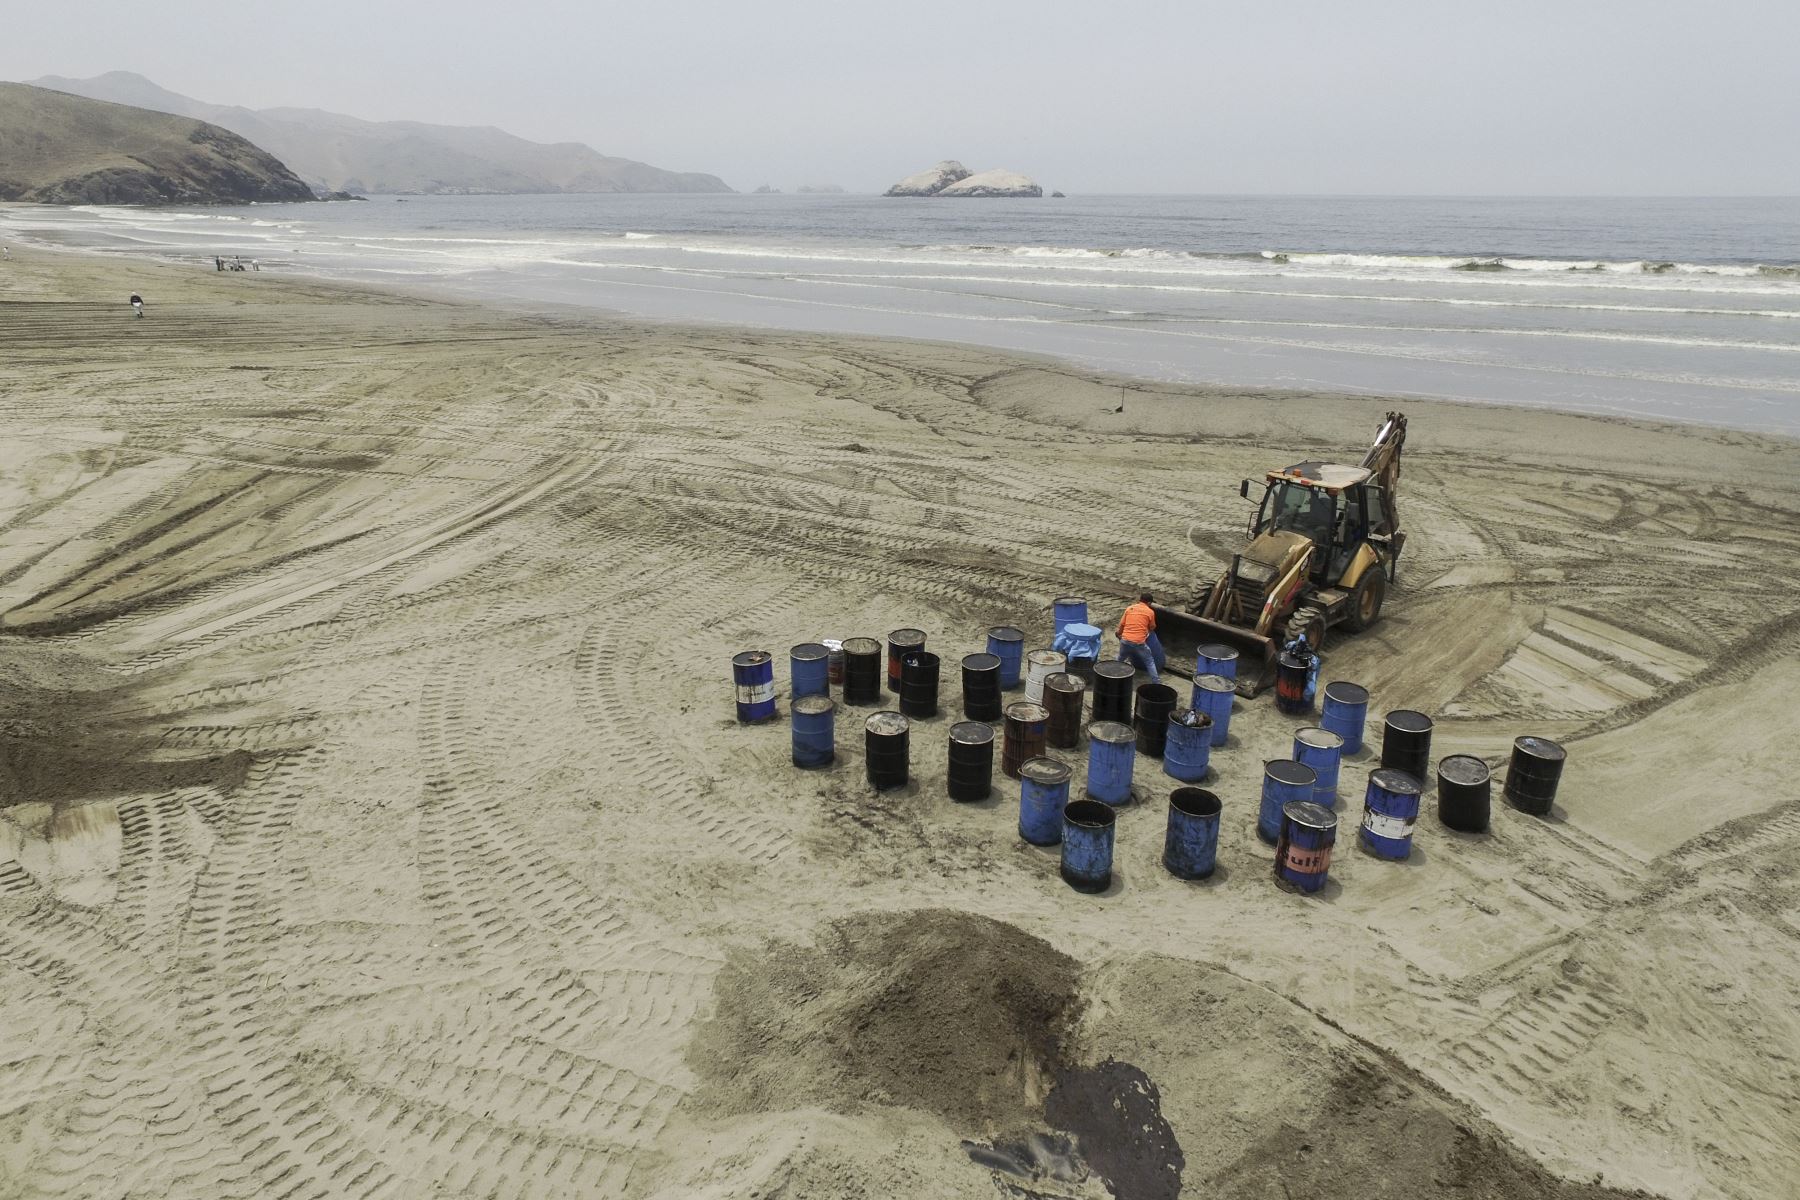 Continúan los trabajos de limpieza en la playa Santa Rosa que también resultó afectada por el derrame de petróleo ocasionado por la empresa Repsol. Foto: ANDINA/Braian Reyna